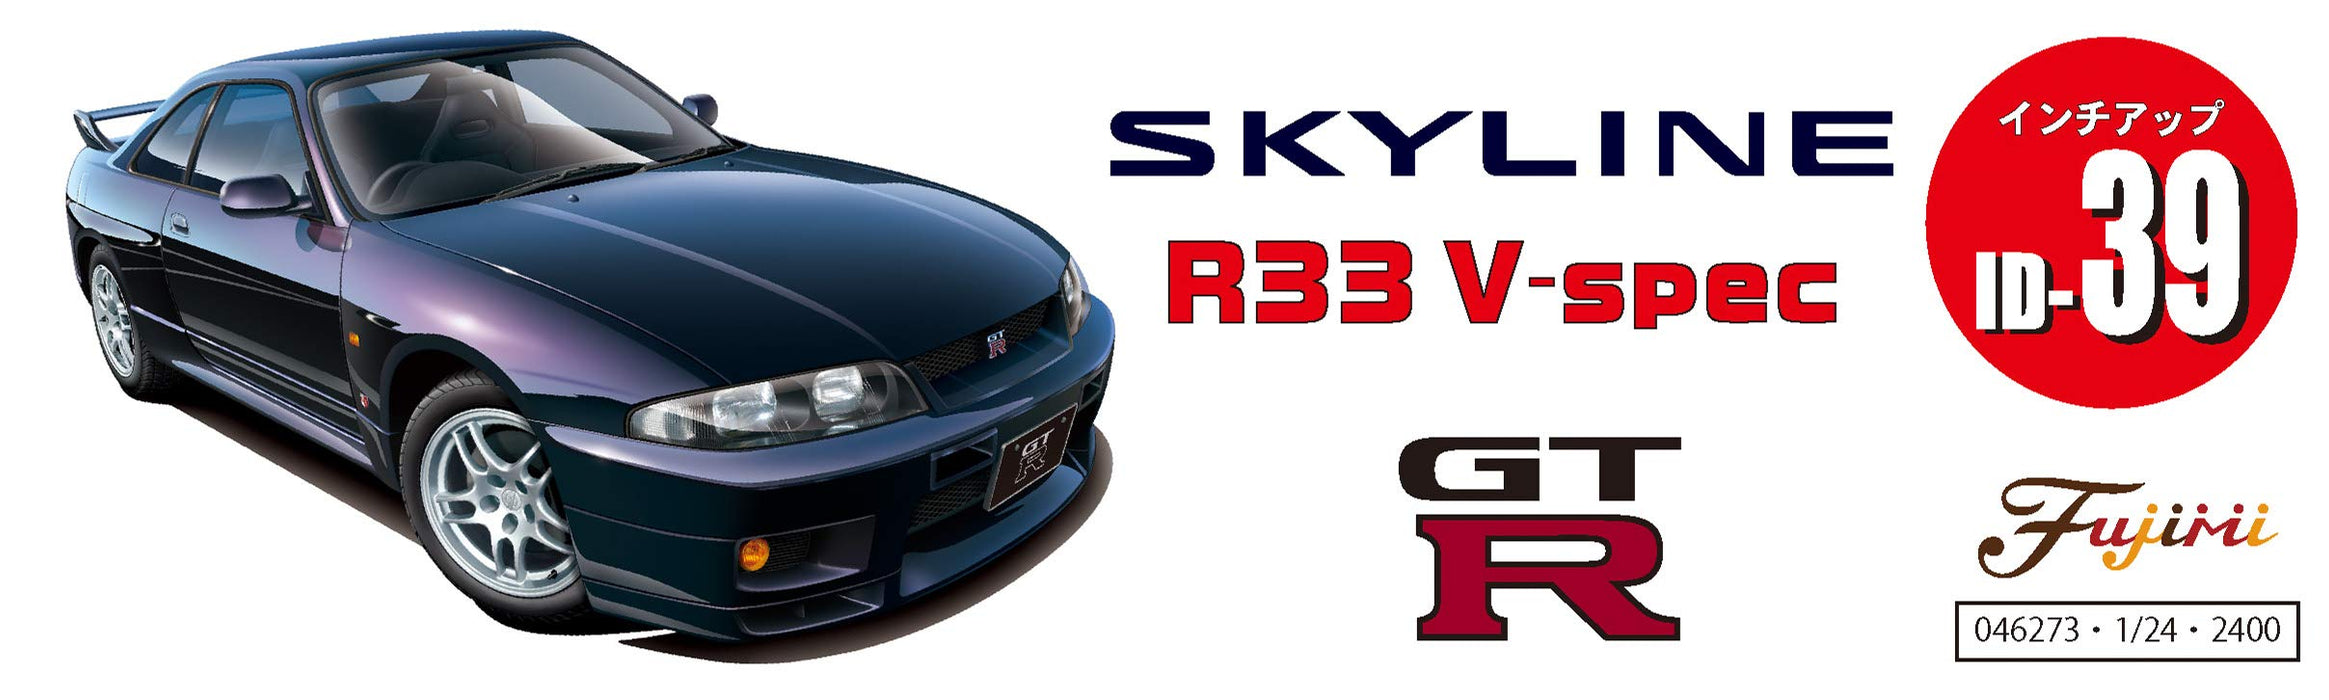 Fujimi Inch Up 1/24 R33 Skyline Gt-R V-Spec 95 Japanese Scale Car Model Kit